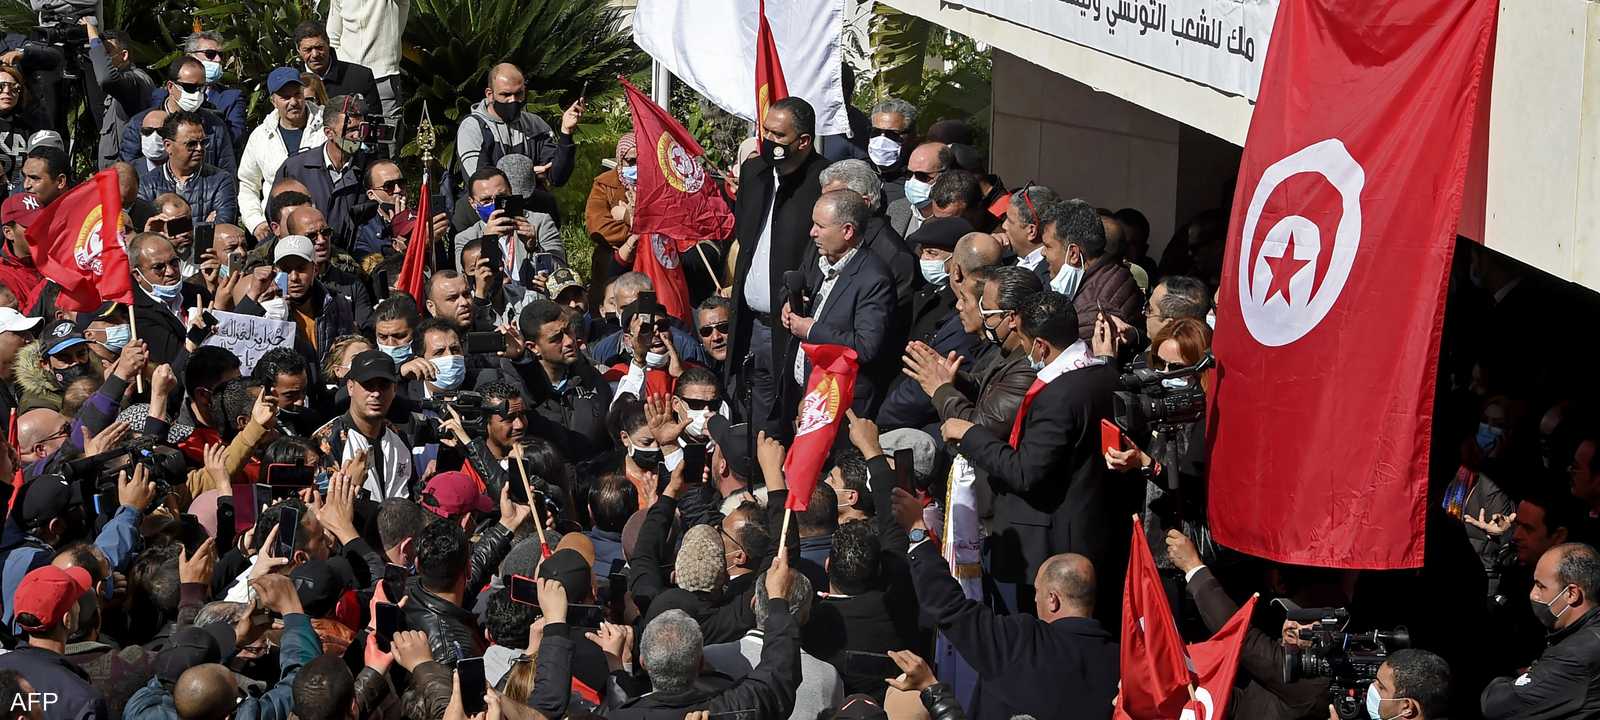 تونس شهدت احتجاجات مؤخرا للمطالبة بالعدالة وتحسين المعيشة